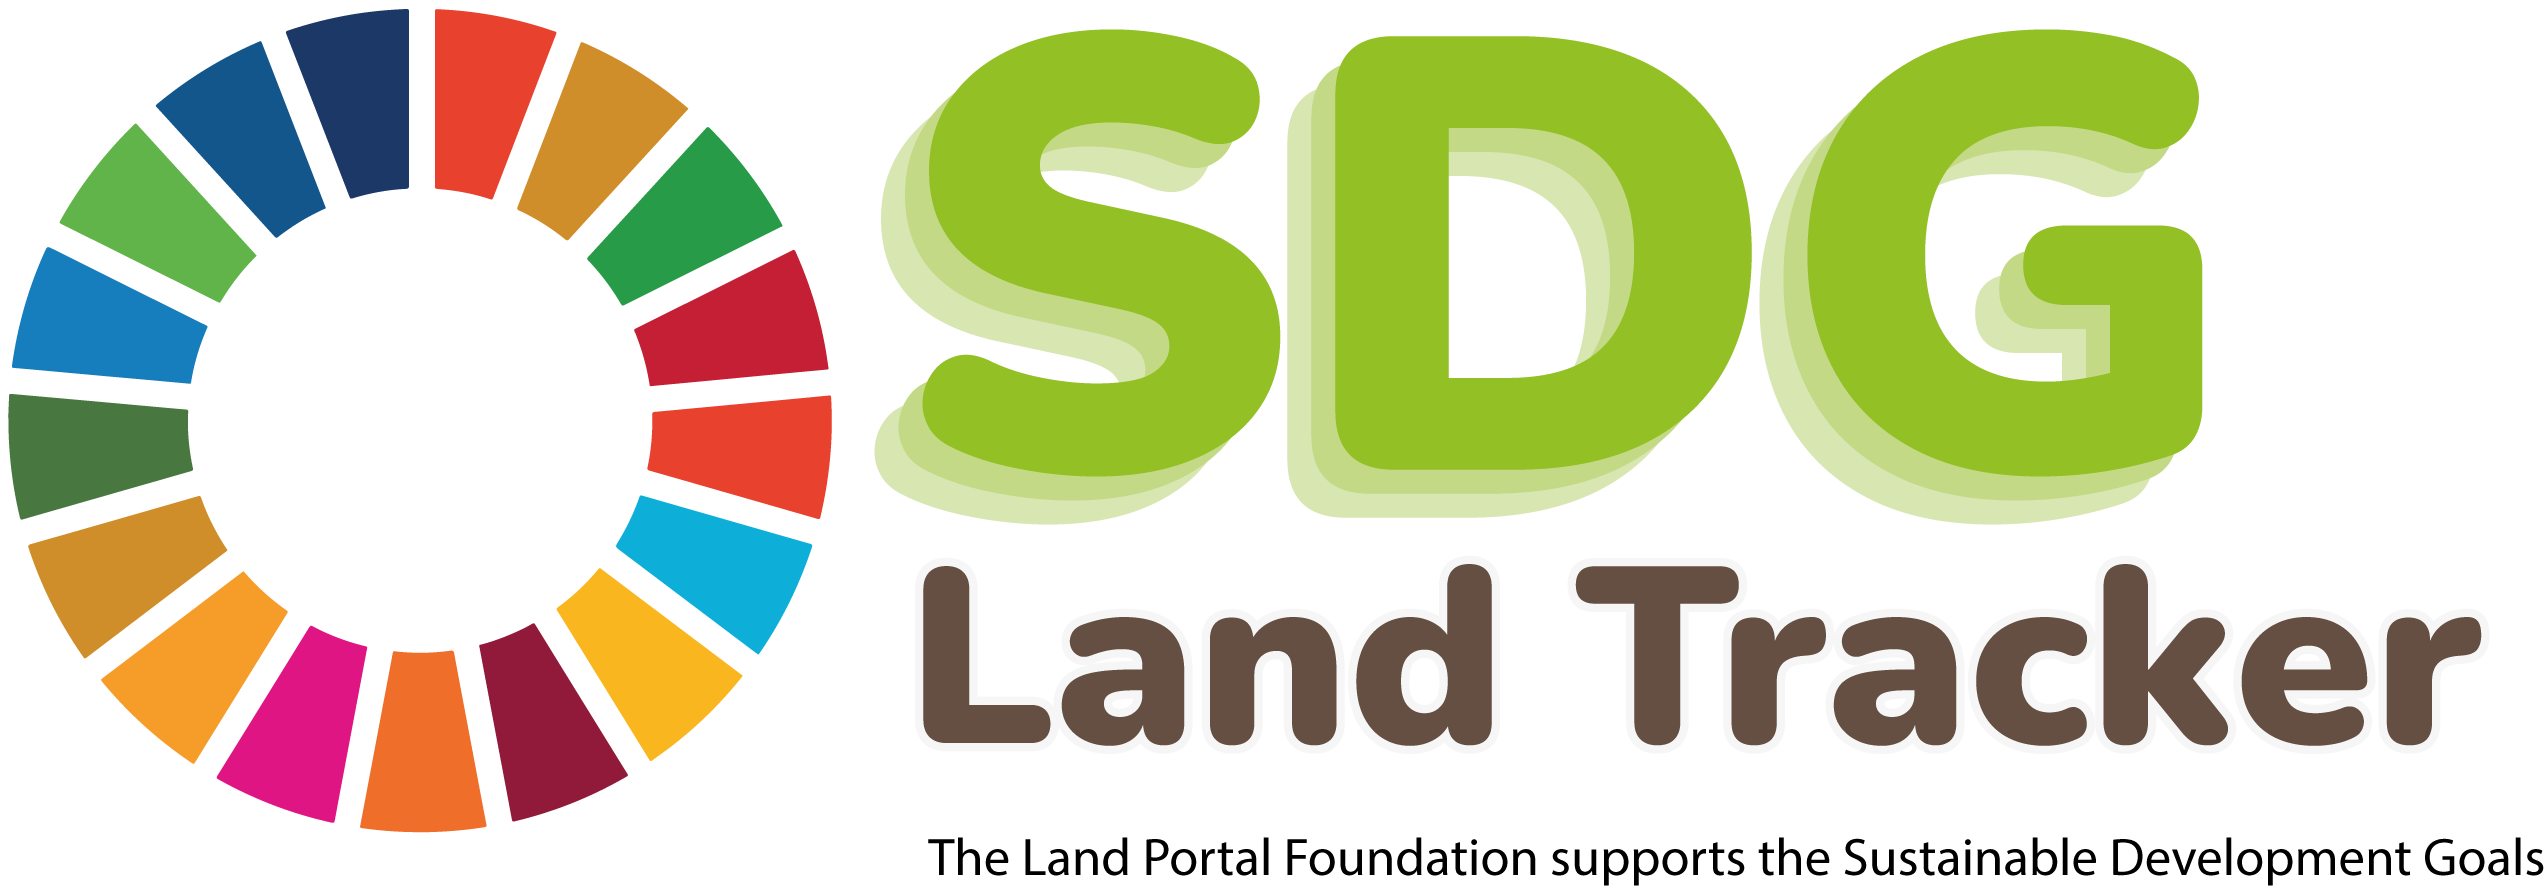 logo sdg-land-tracker